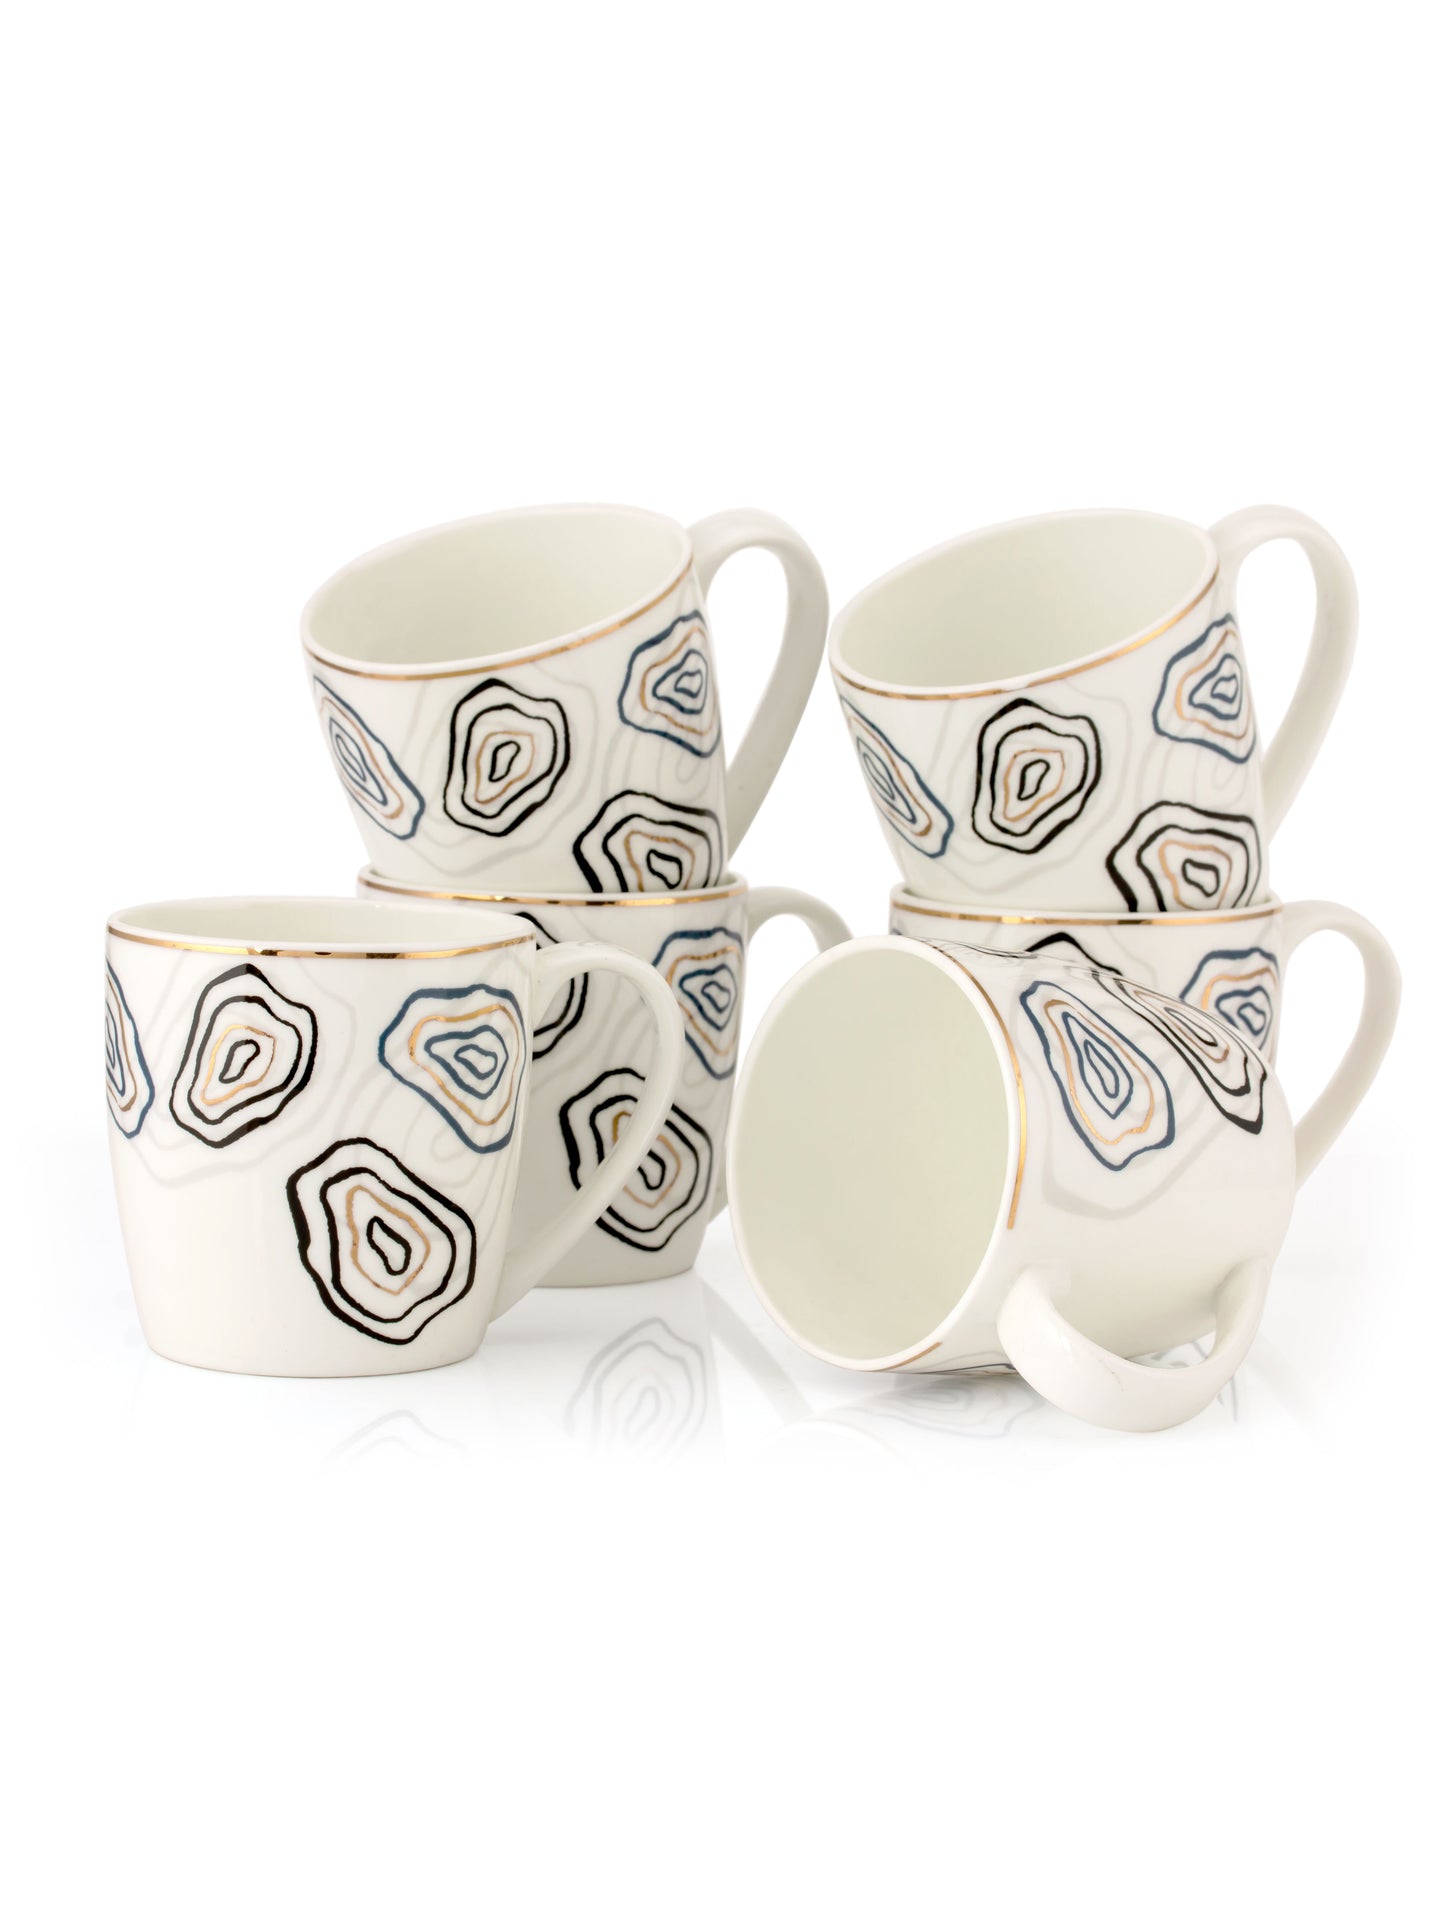 JCPL Alton Posh Coffee & Tea Mug Set of 6 (D405)